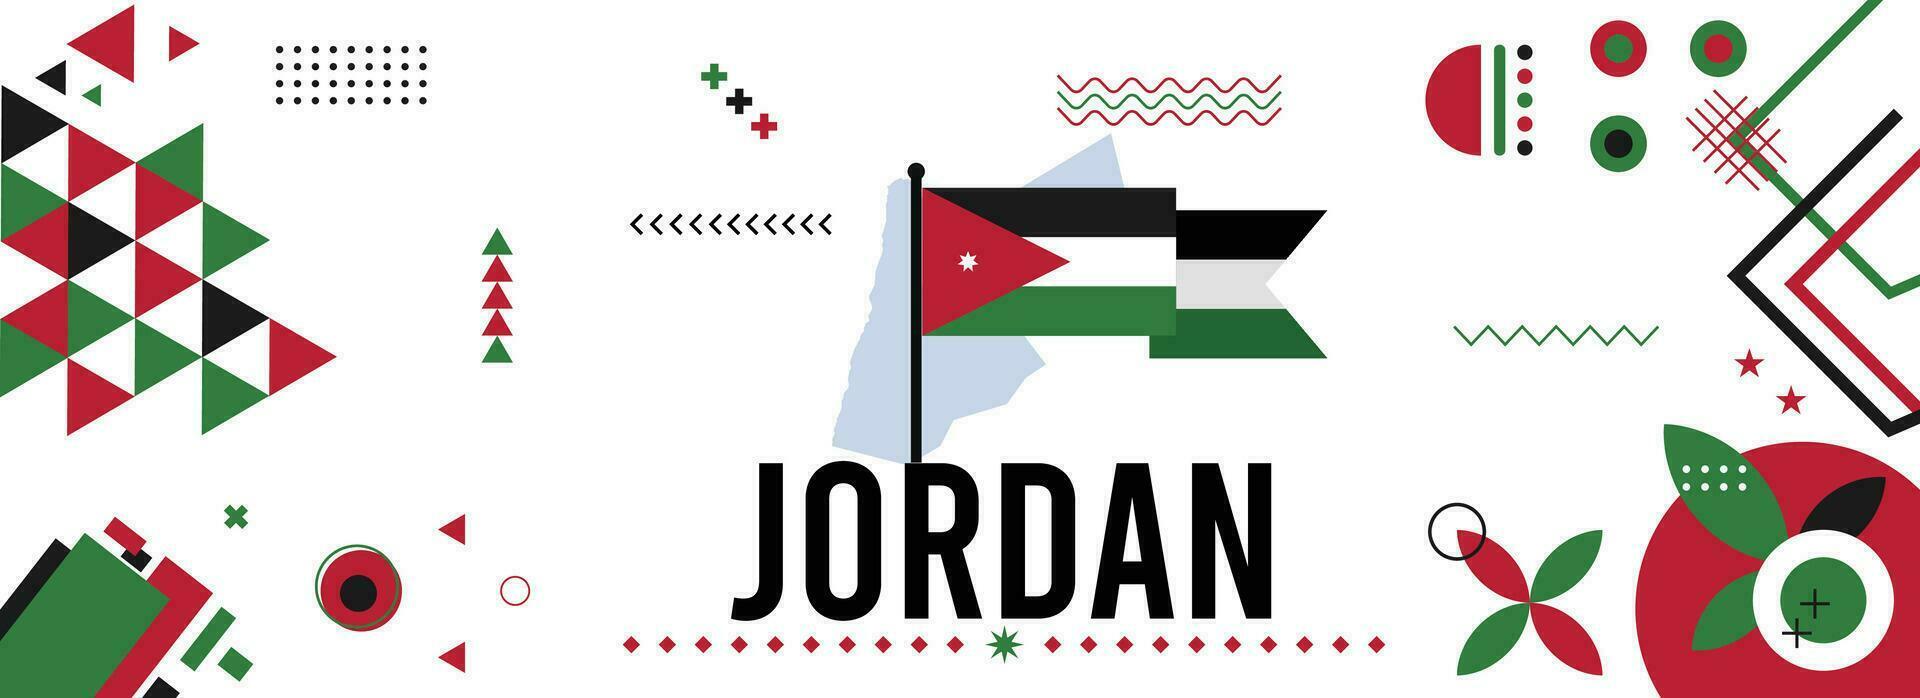 Jordanië nationaal of onafhankelijkheid dag banier voor land viering. vlag en kaart van Jordanië modern retro ontwerp met typorgaphy abstract meetkundig pictogrammen. vector illustratie.